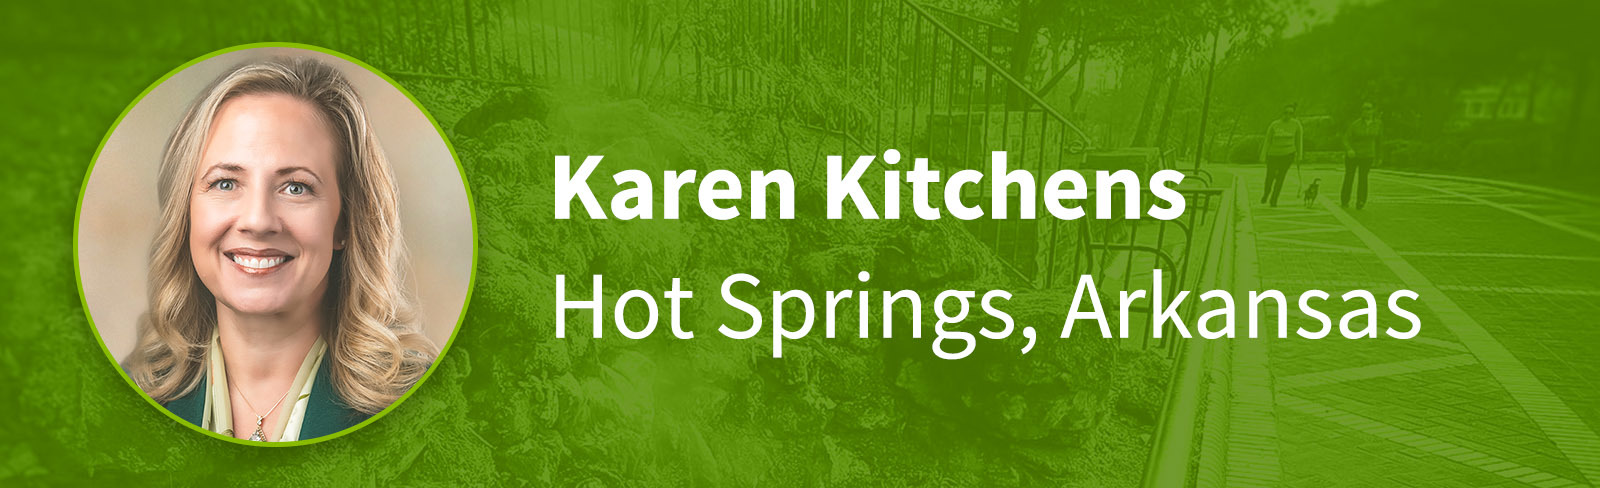 Karen Kitchens